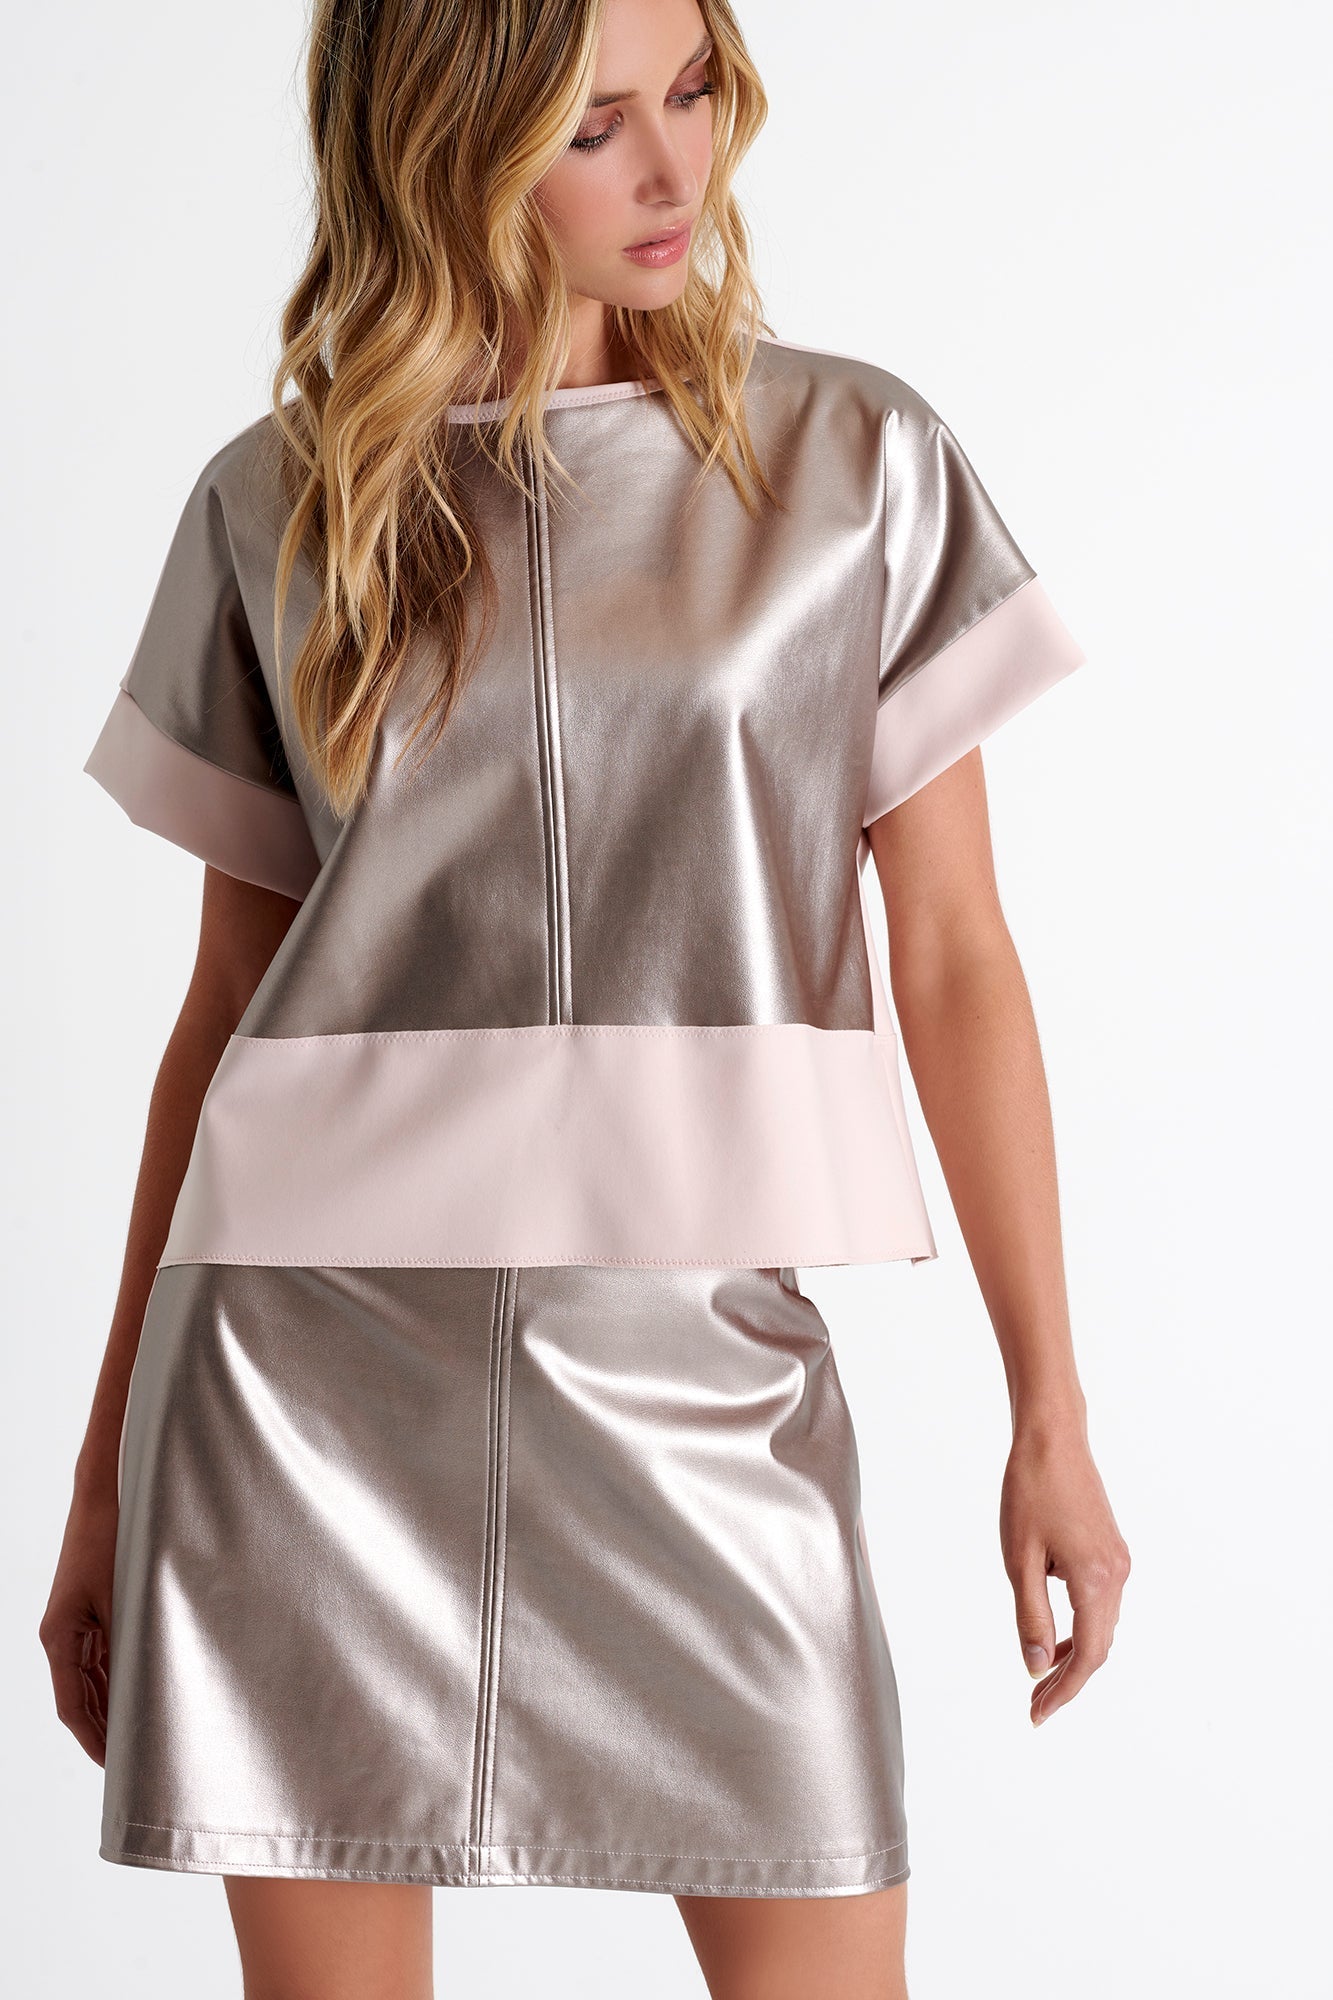 Vegan Leather Mini Skirt 2 / 300 Rose Gold / 75% POLYAMIDE, 25% ELASTANE